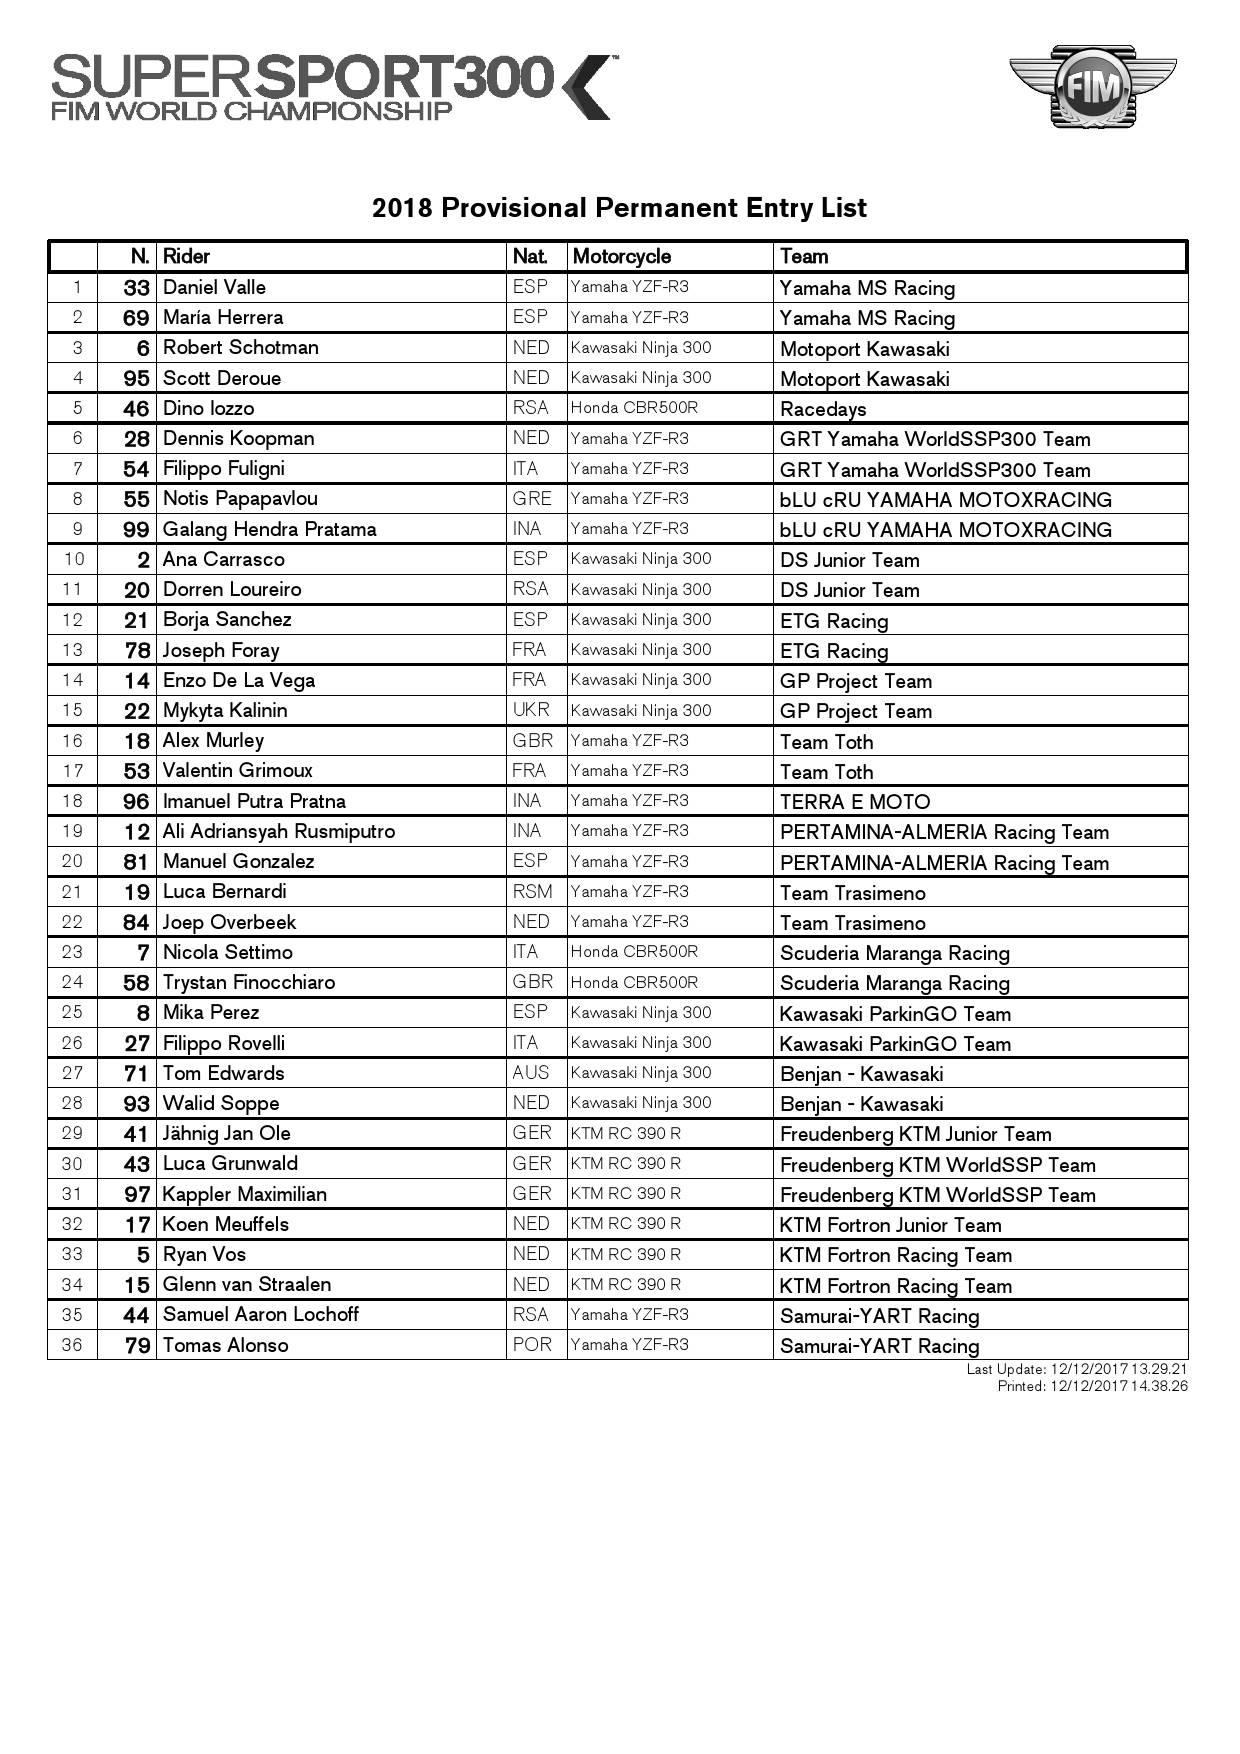 Список участников FIM Supersport 300 World Championship 2018